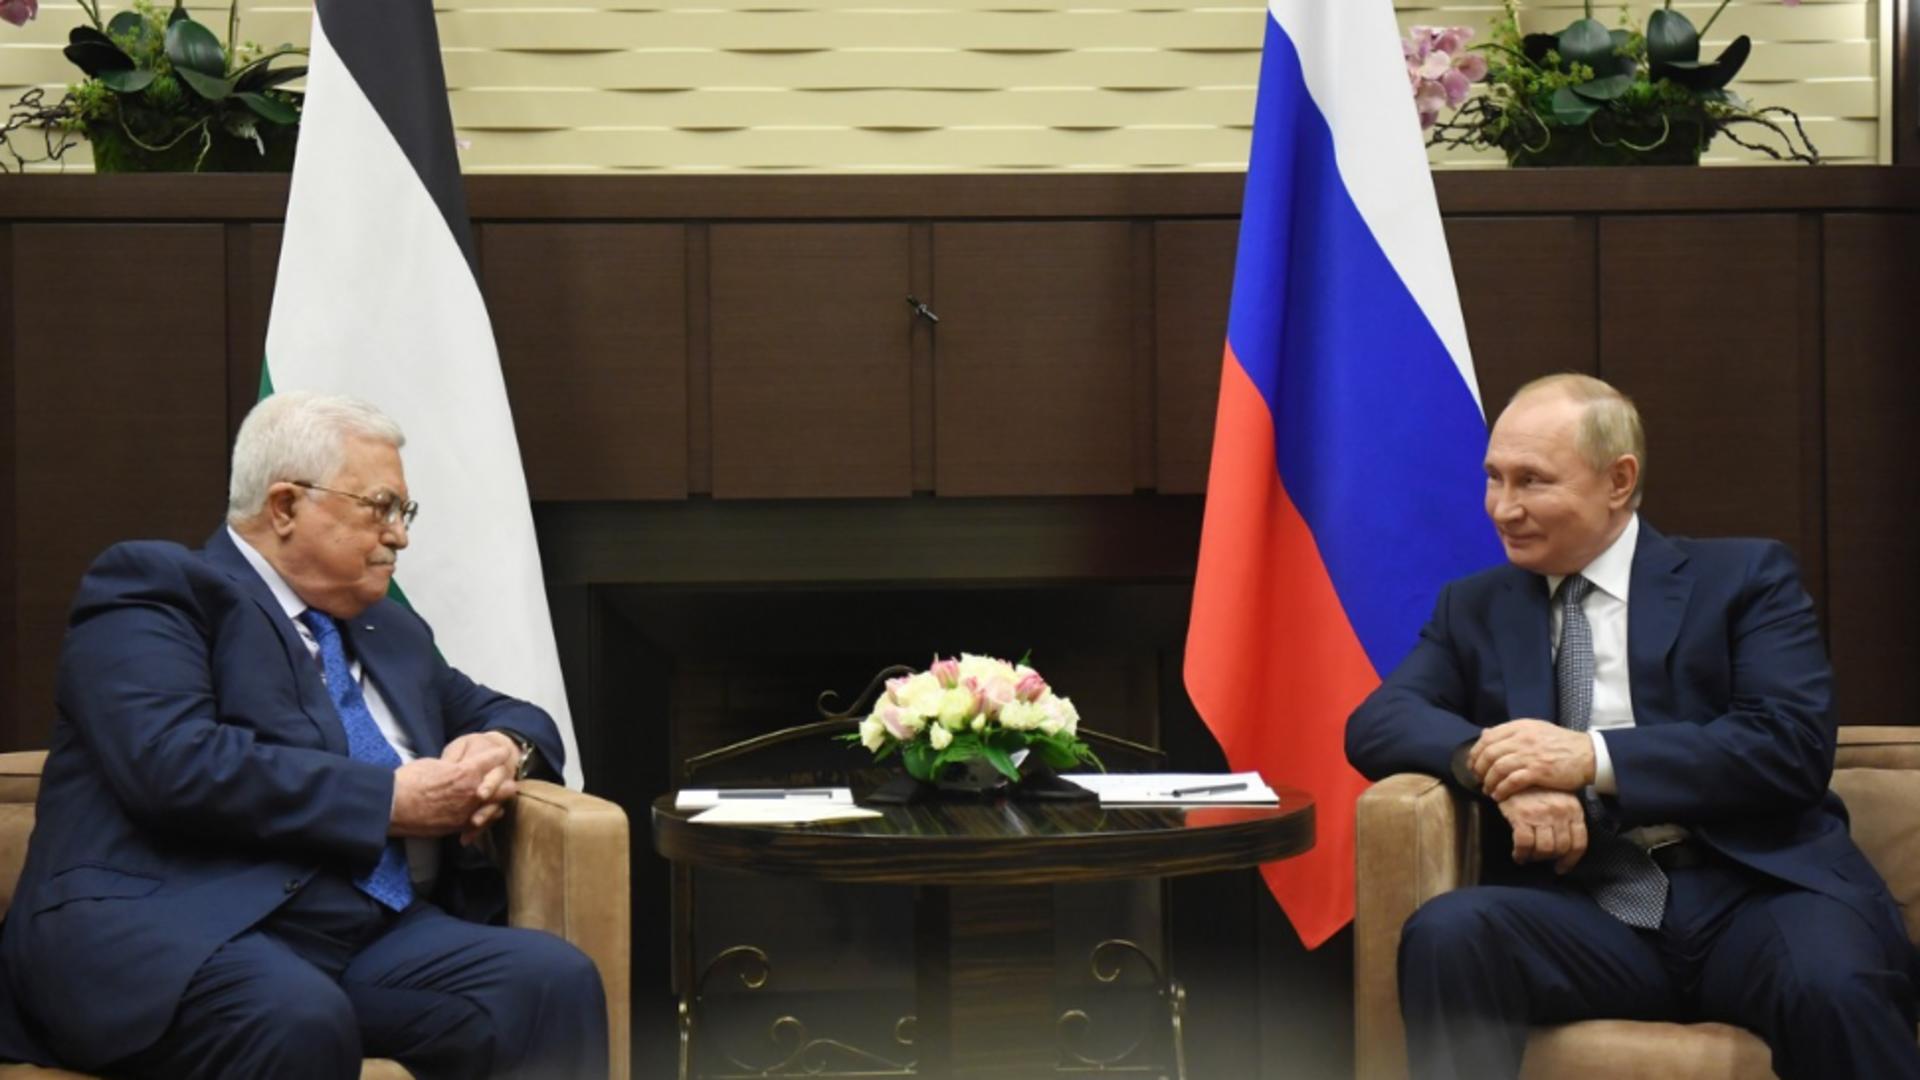 Preşedintele palestinian şi-a amânat întâlnirea cu Putin, la Moscova – De ce a luat această decizie Mahmoud Abbas